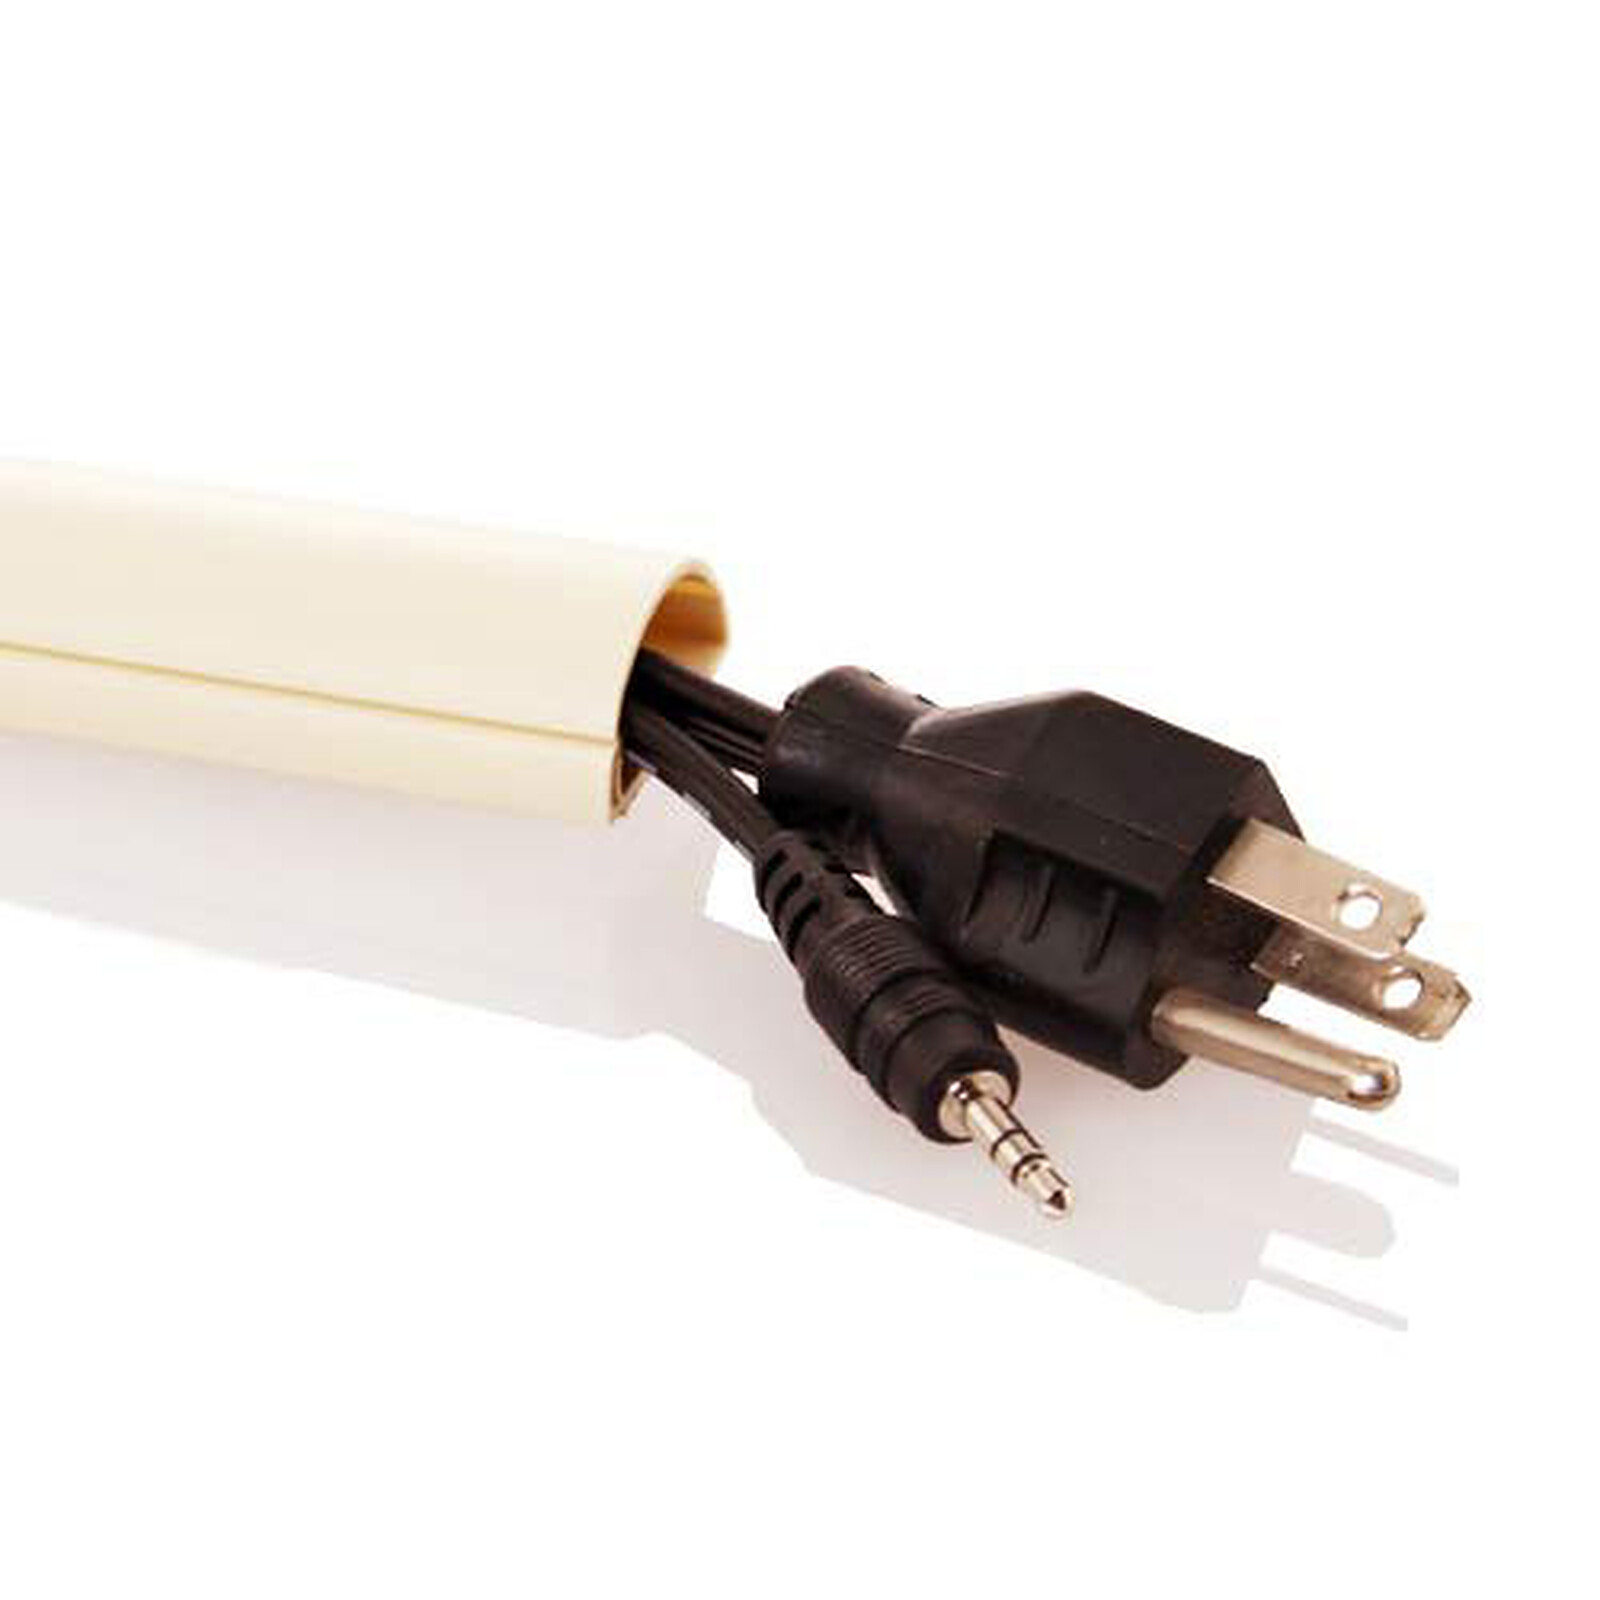 Gaine de rangement pour câbles - diamètre 65 mm max. - longueur 10 m  (coloris blanc) - Passe câble - Garantie 3 ans LDLC